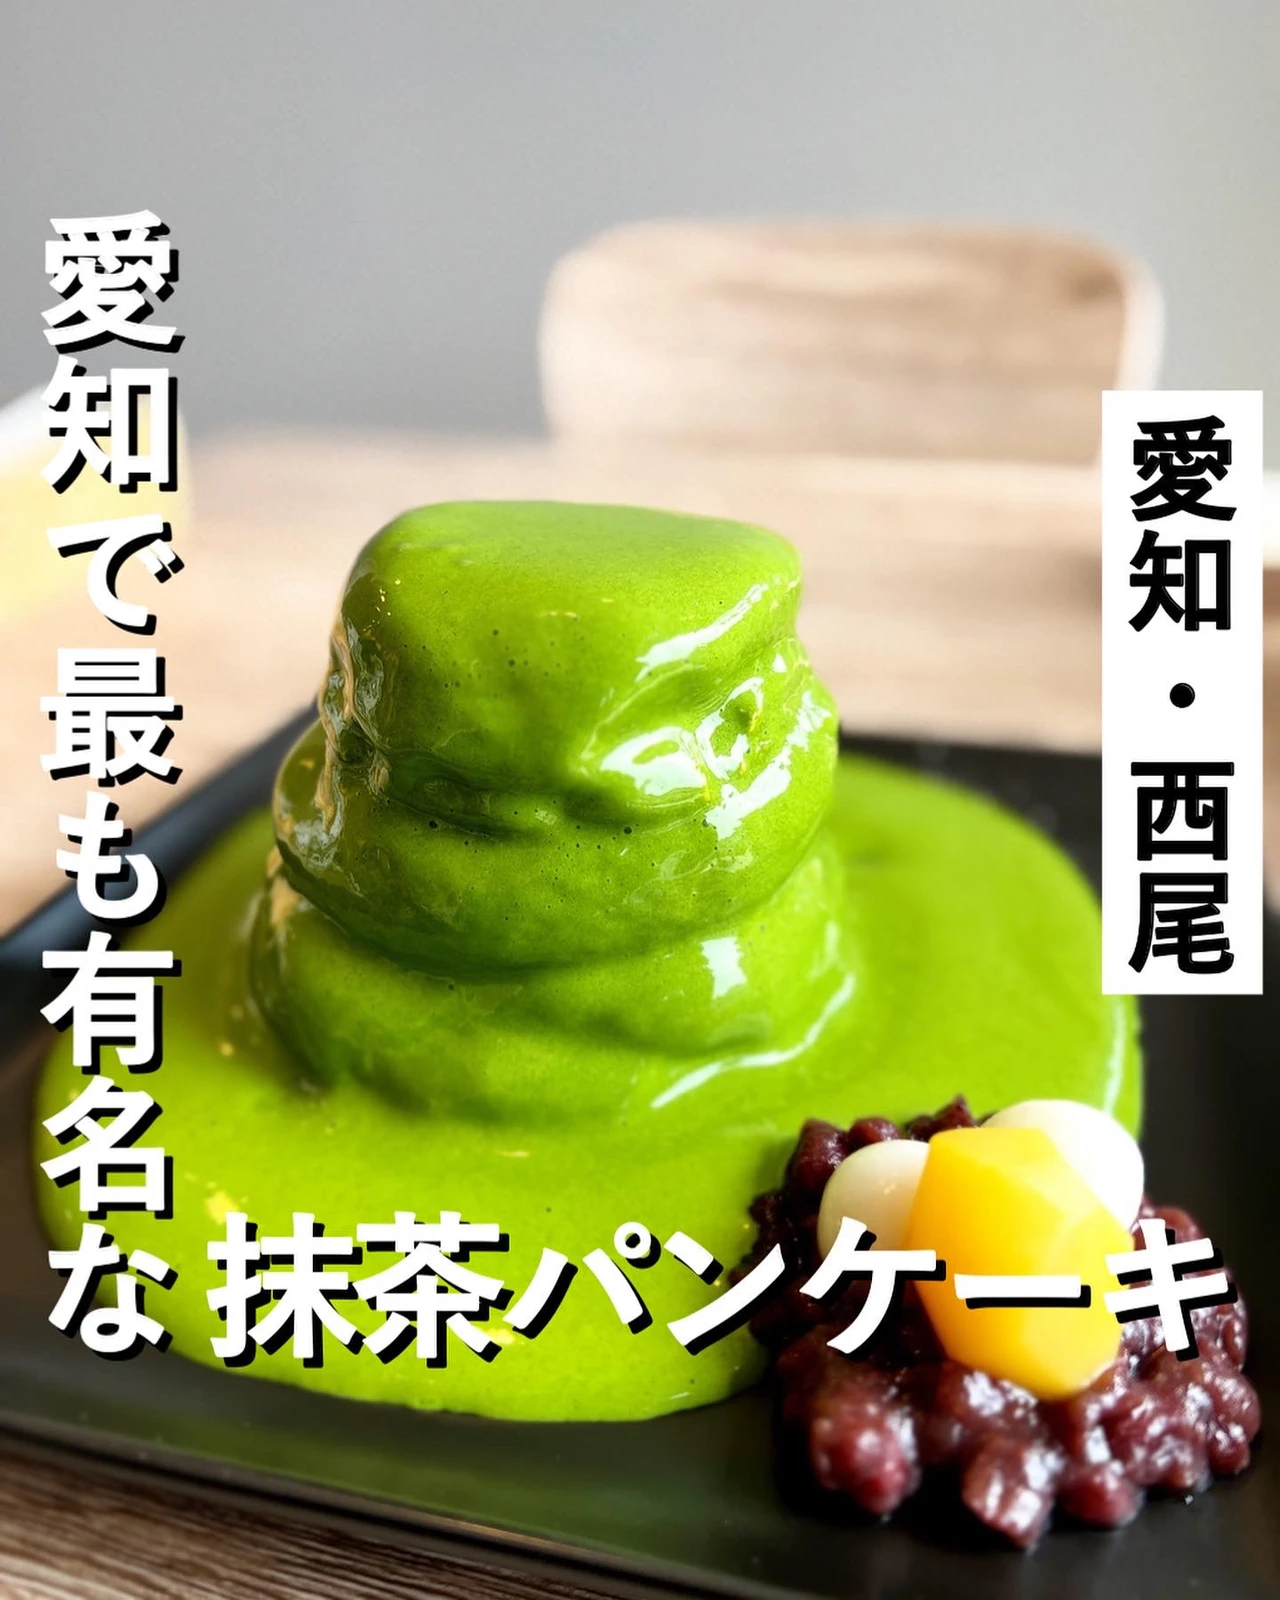 愛知 Snsで話題の抹茶エスプーマをかけるふわふわパンケーキ たく 東京 神奈川グルメが投稿したフォトブック Lemon8